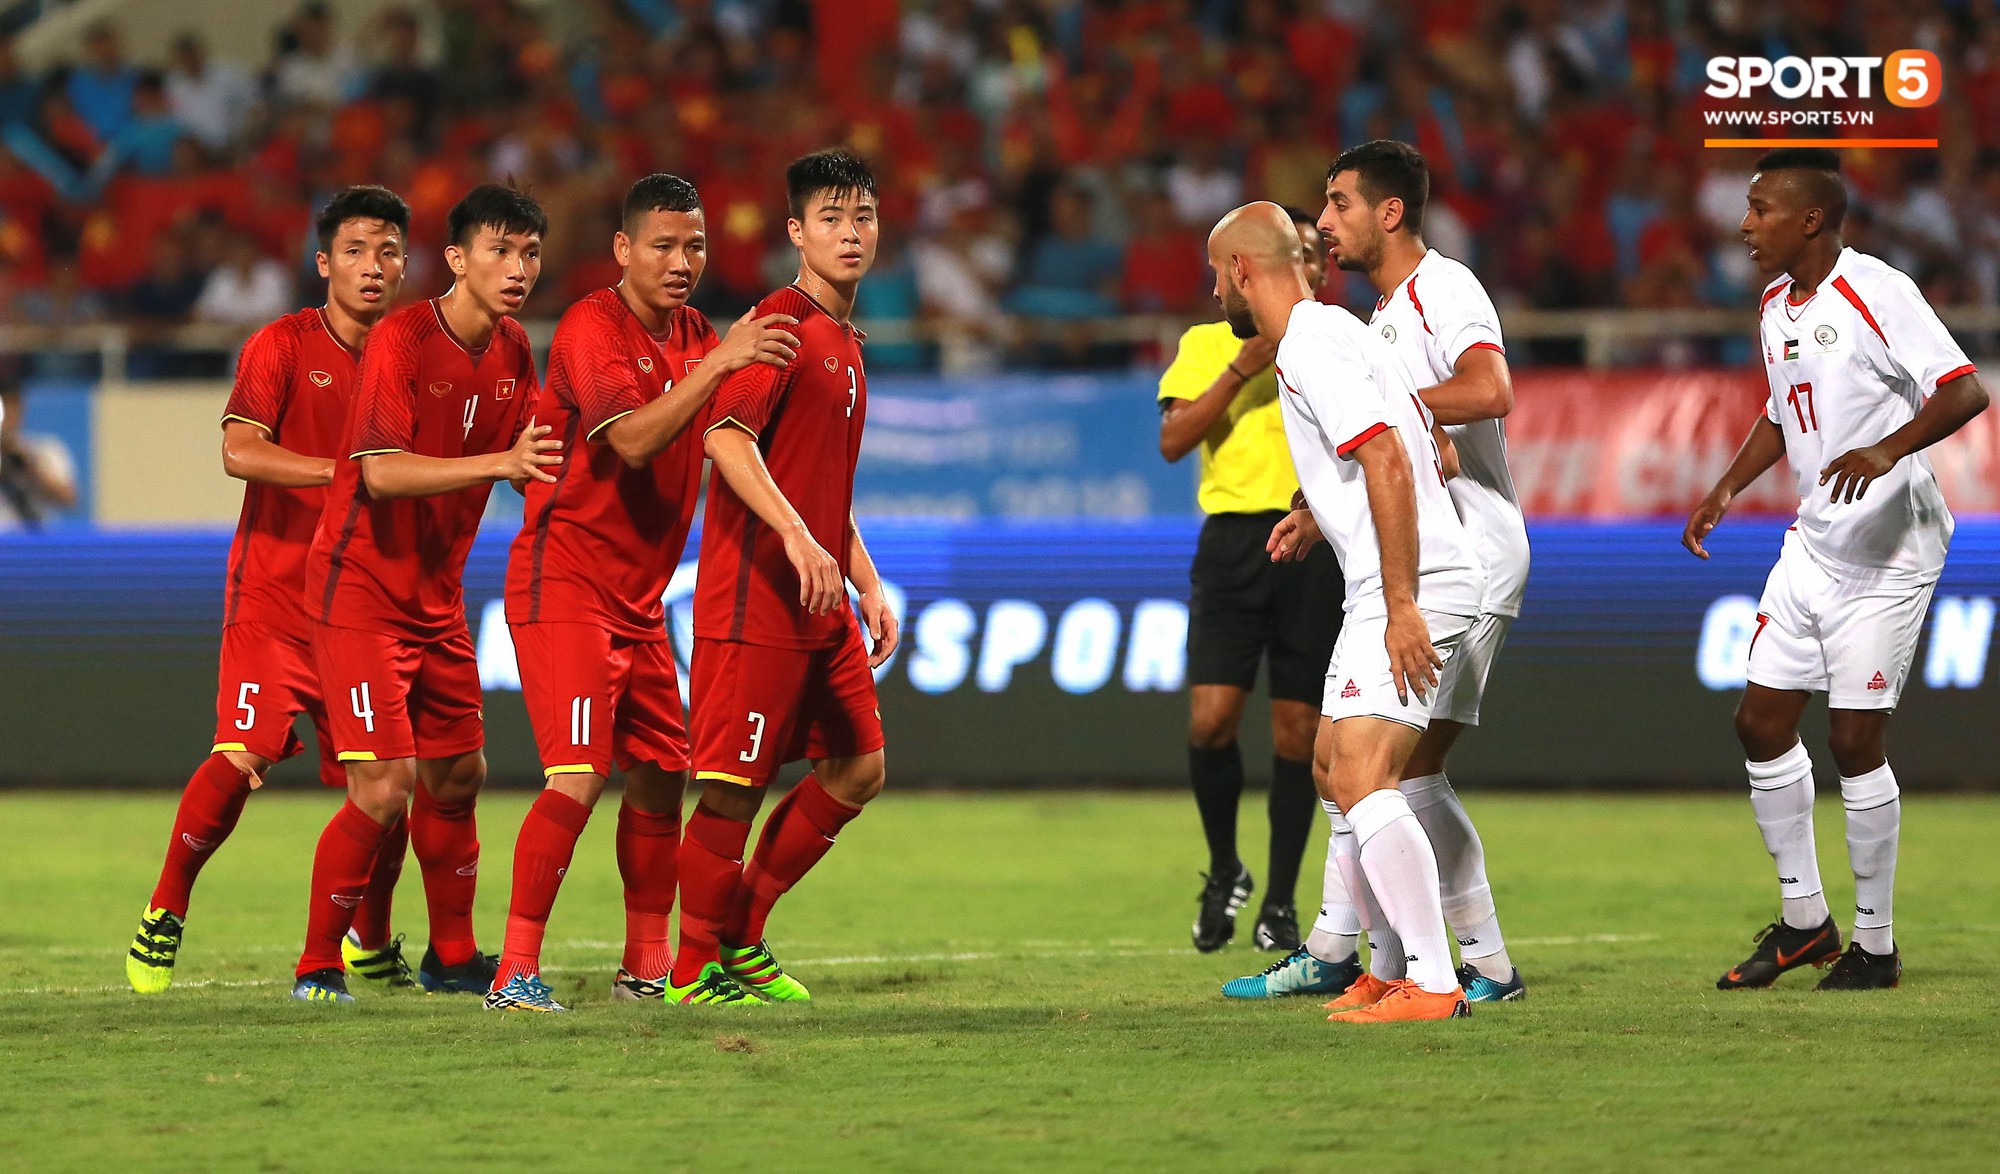 Anh Đức,Công Phượng tỏa sáng giúp U23 Việt Nam ngược dòng đánh bại U23 Palestine - Ảnh 13.